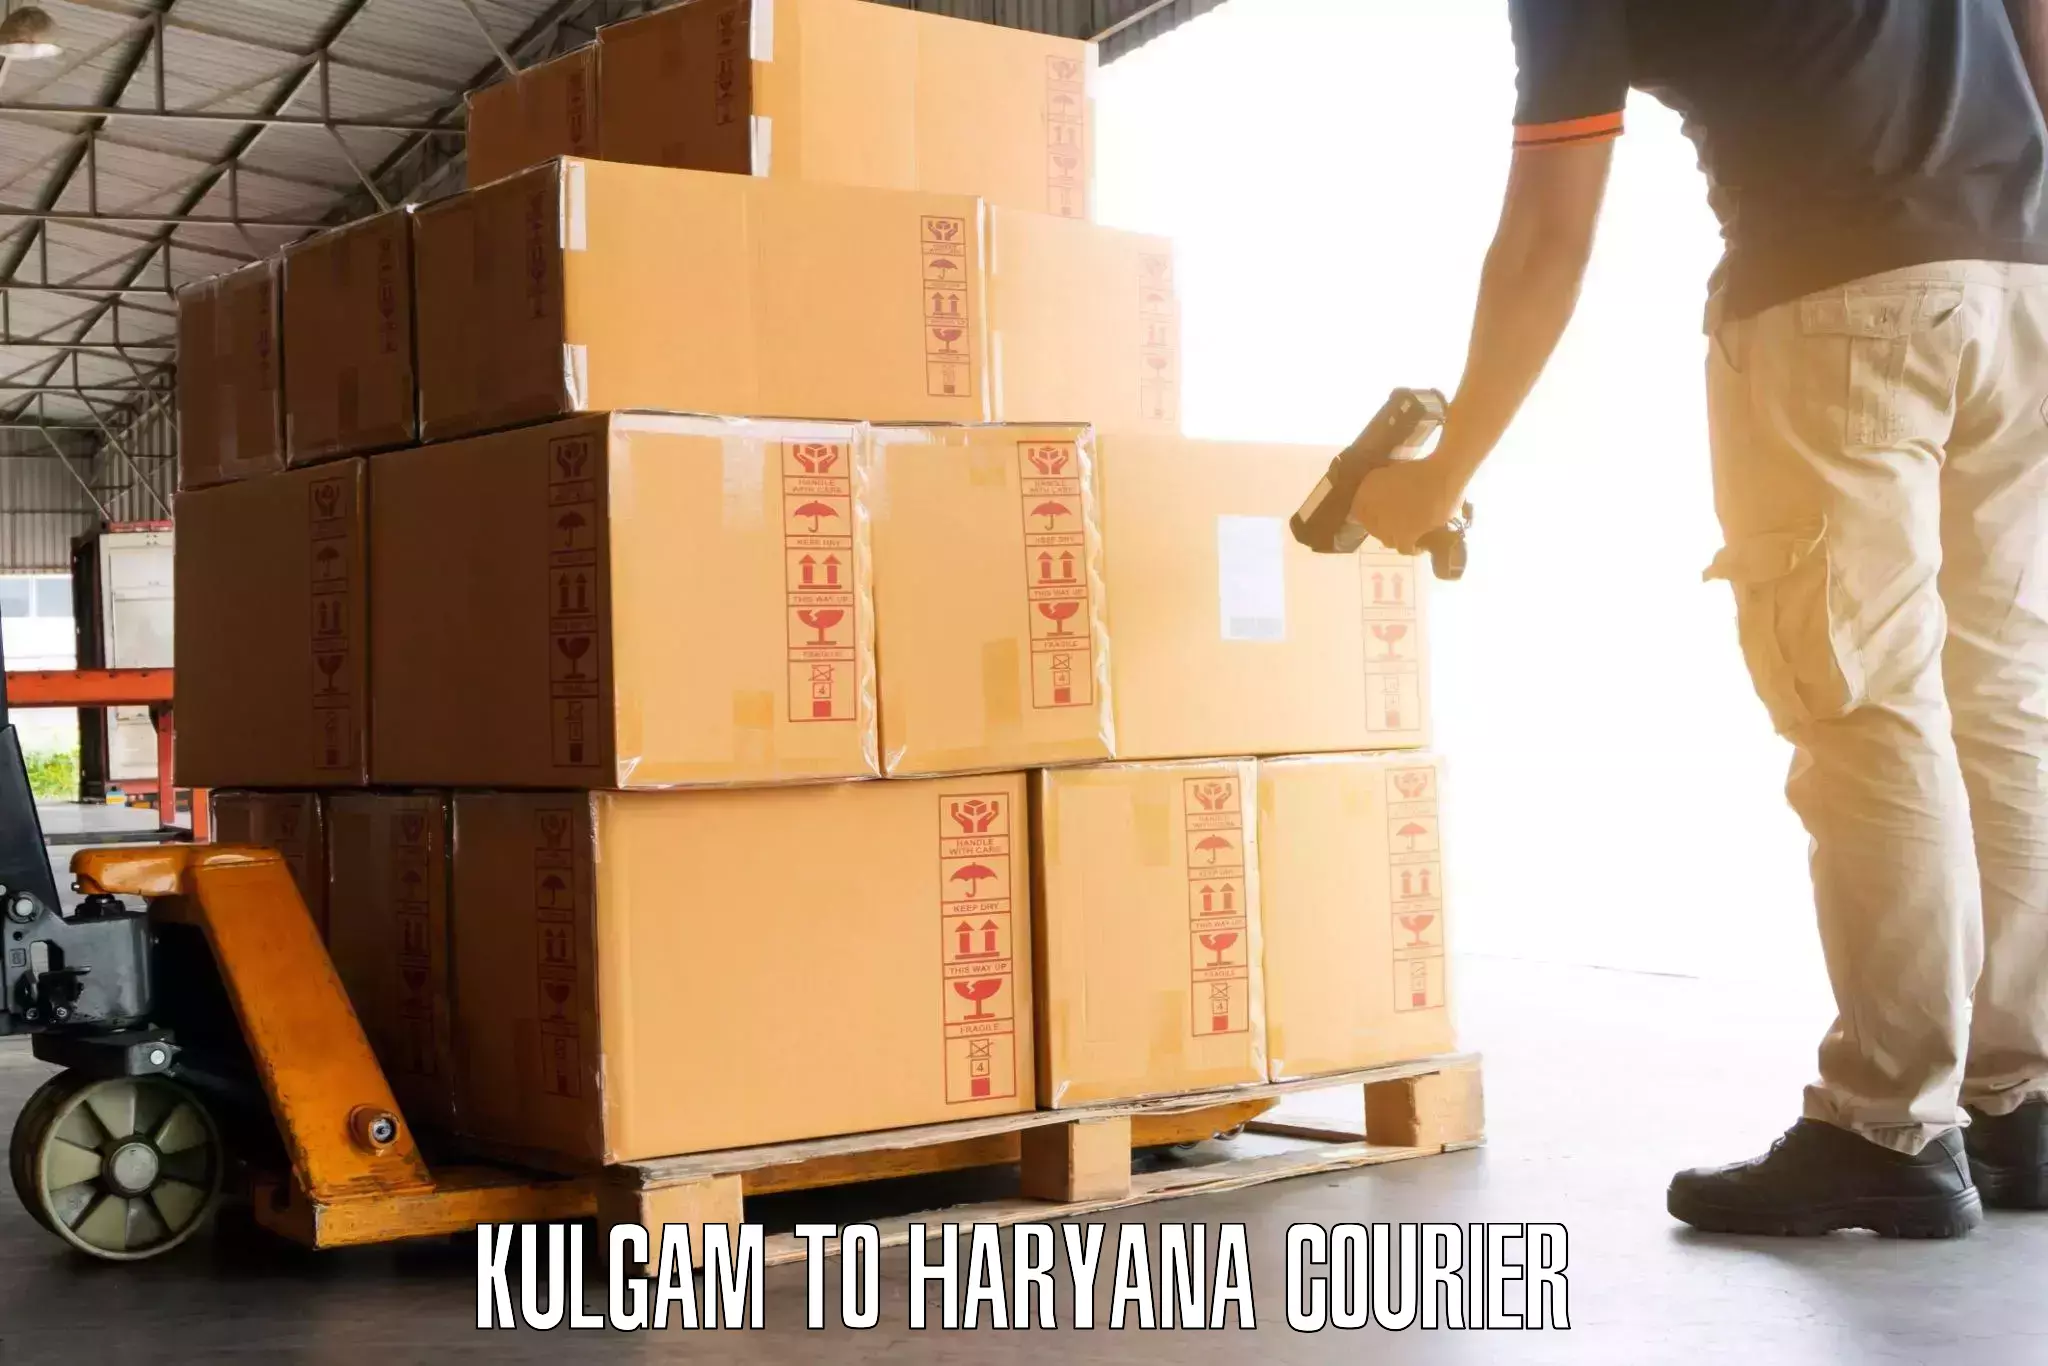 Luggage transport rates Kulgam to NCR Haryana